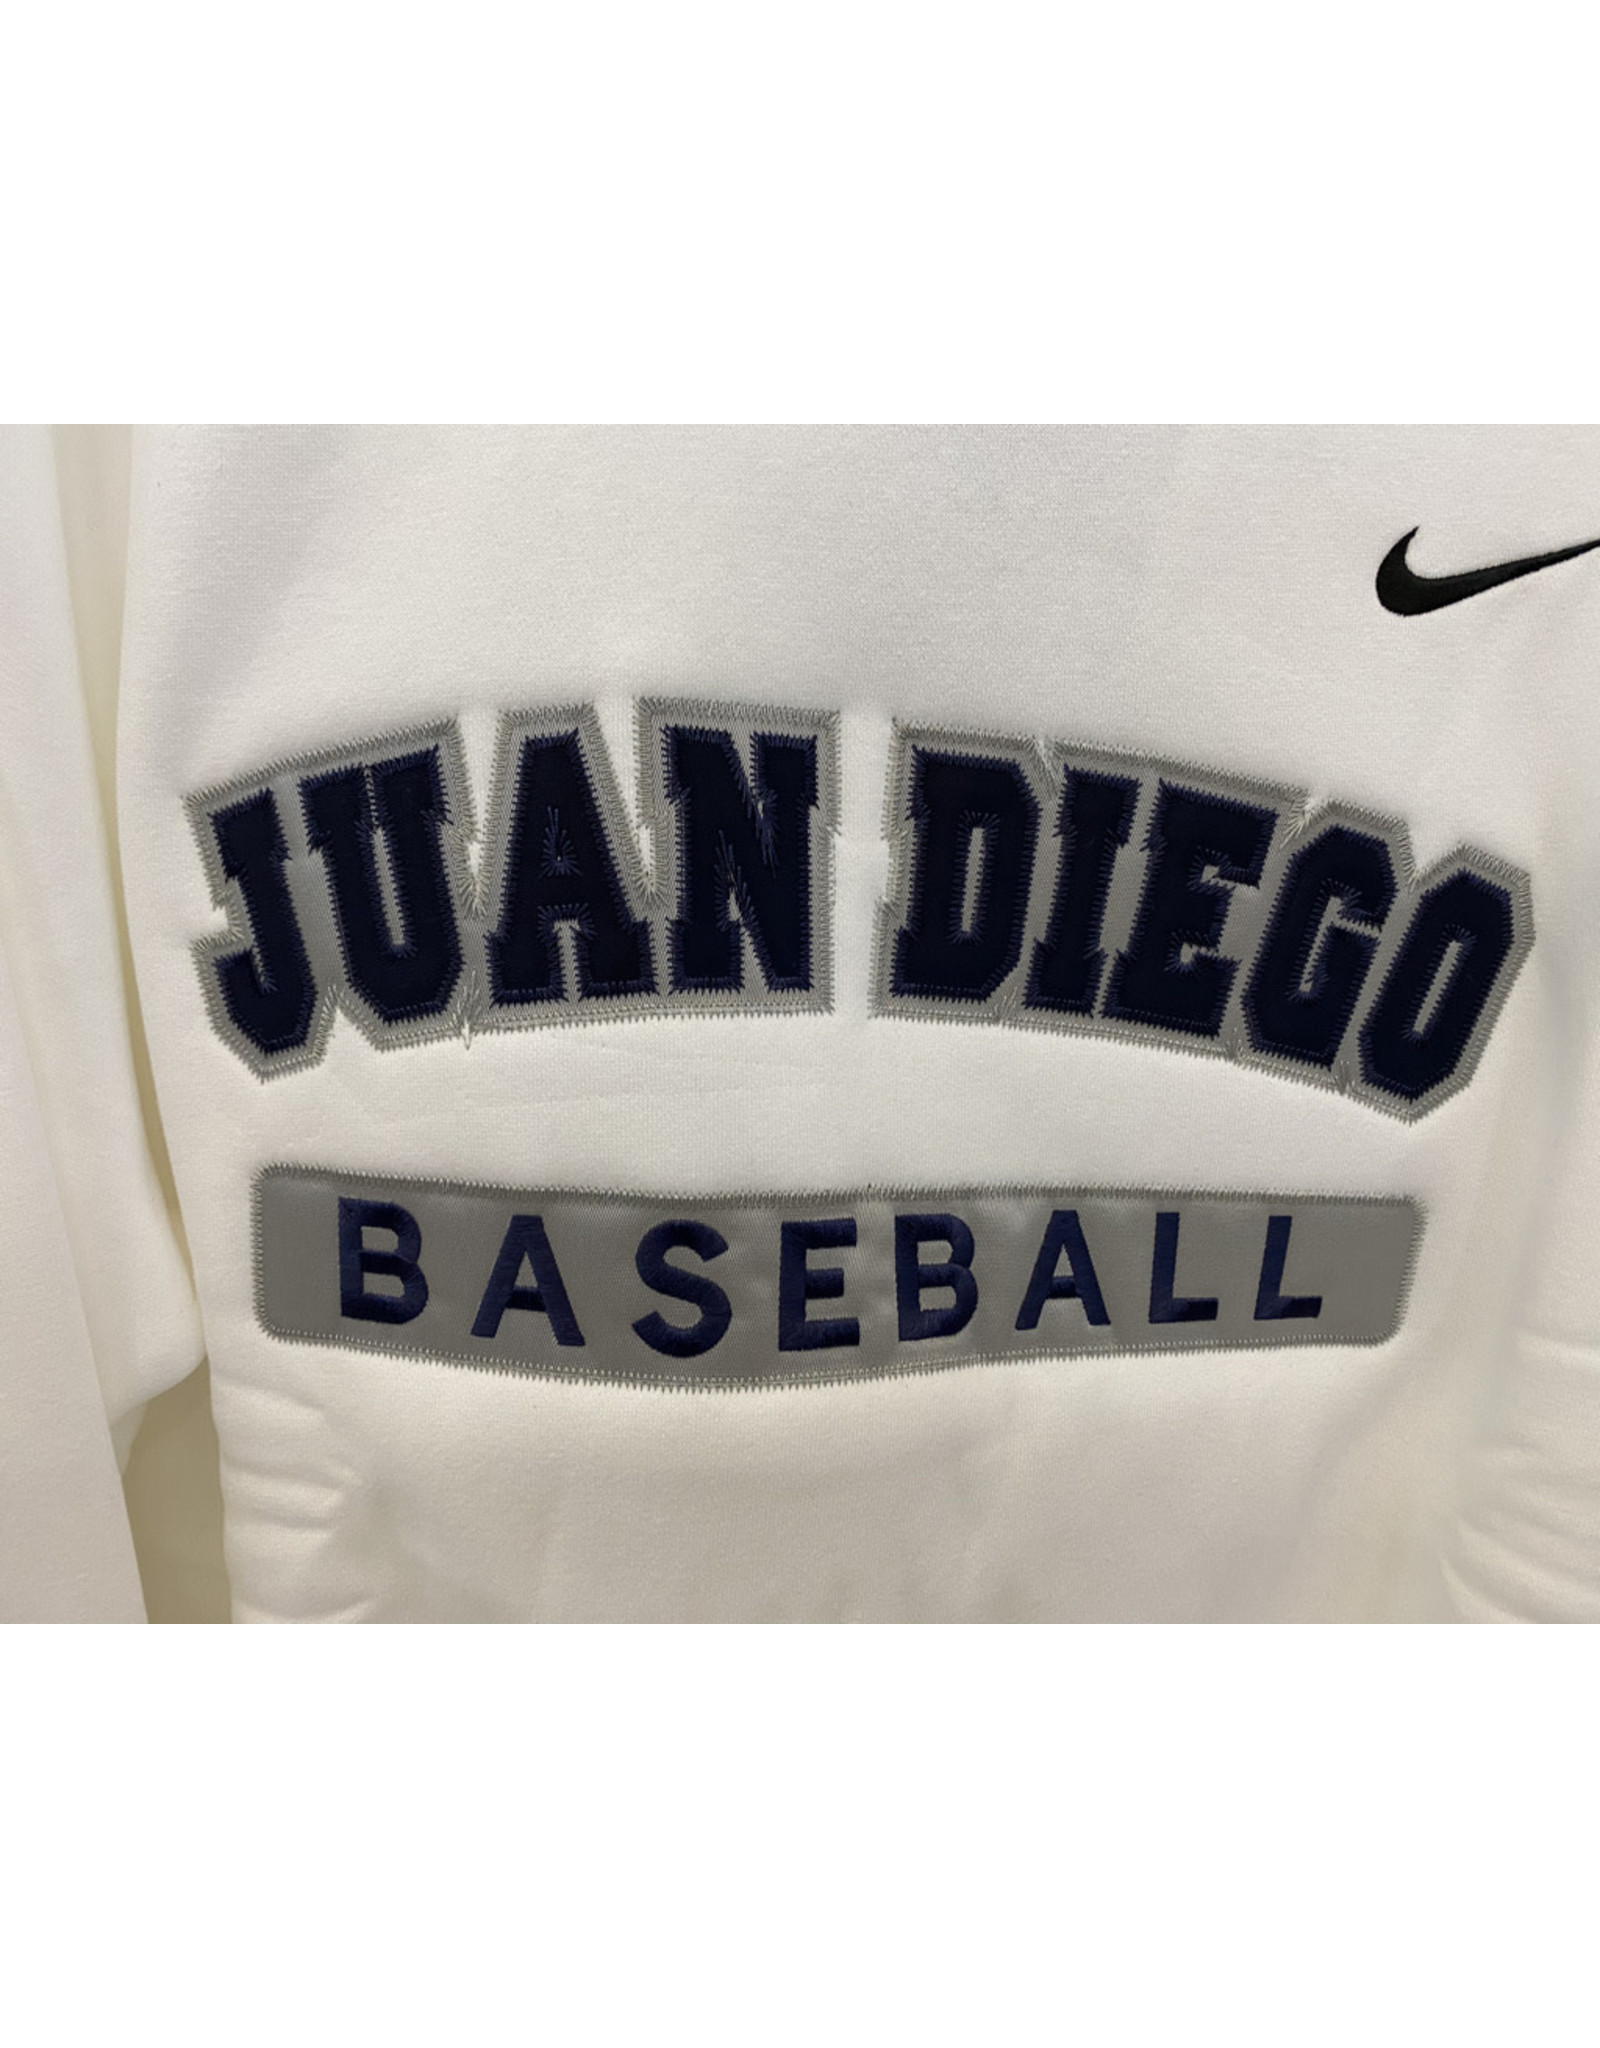 NON-UNIFORM Juan Diego Custom Nike Athletic Hoodie